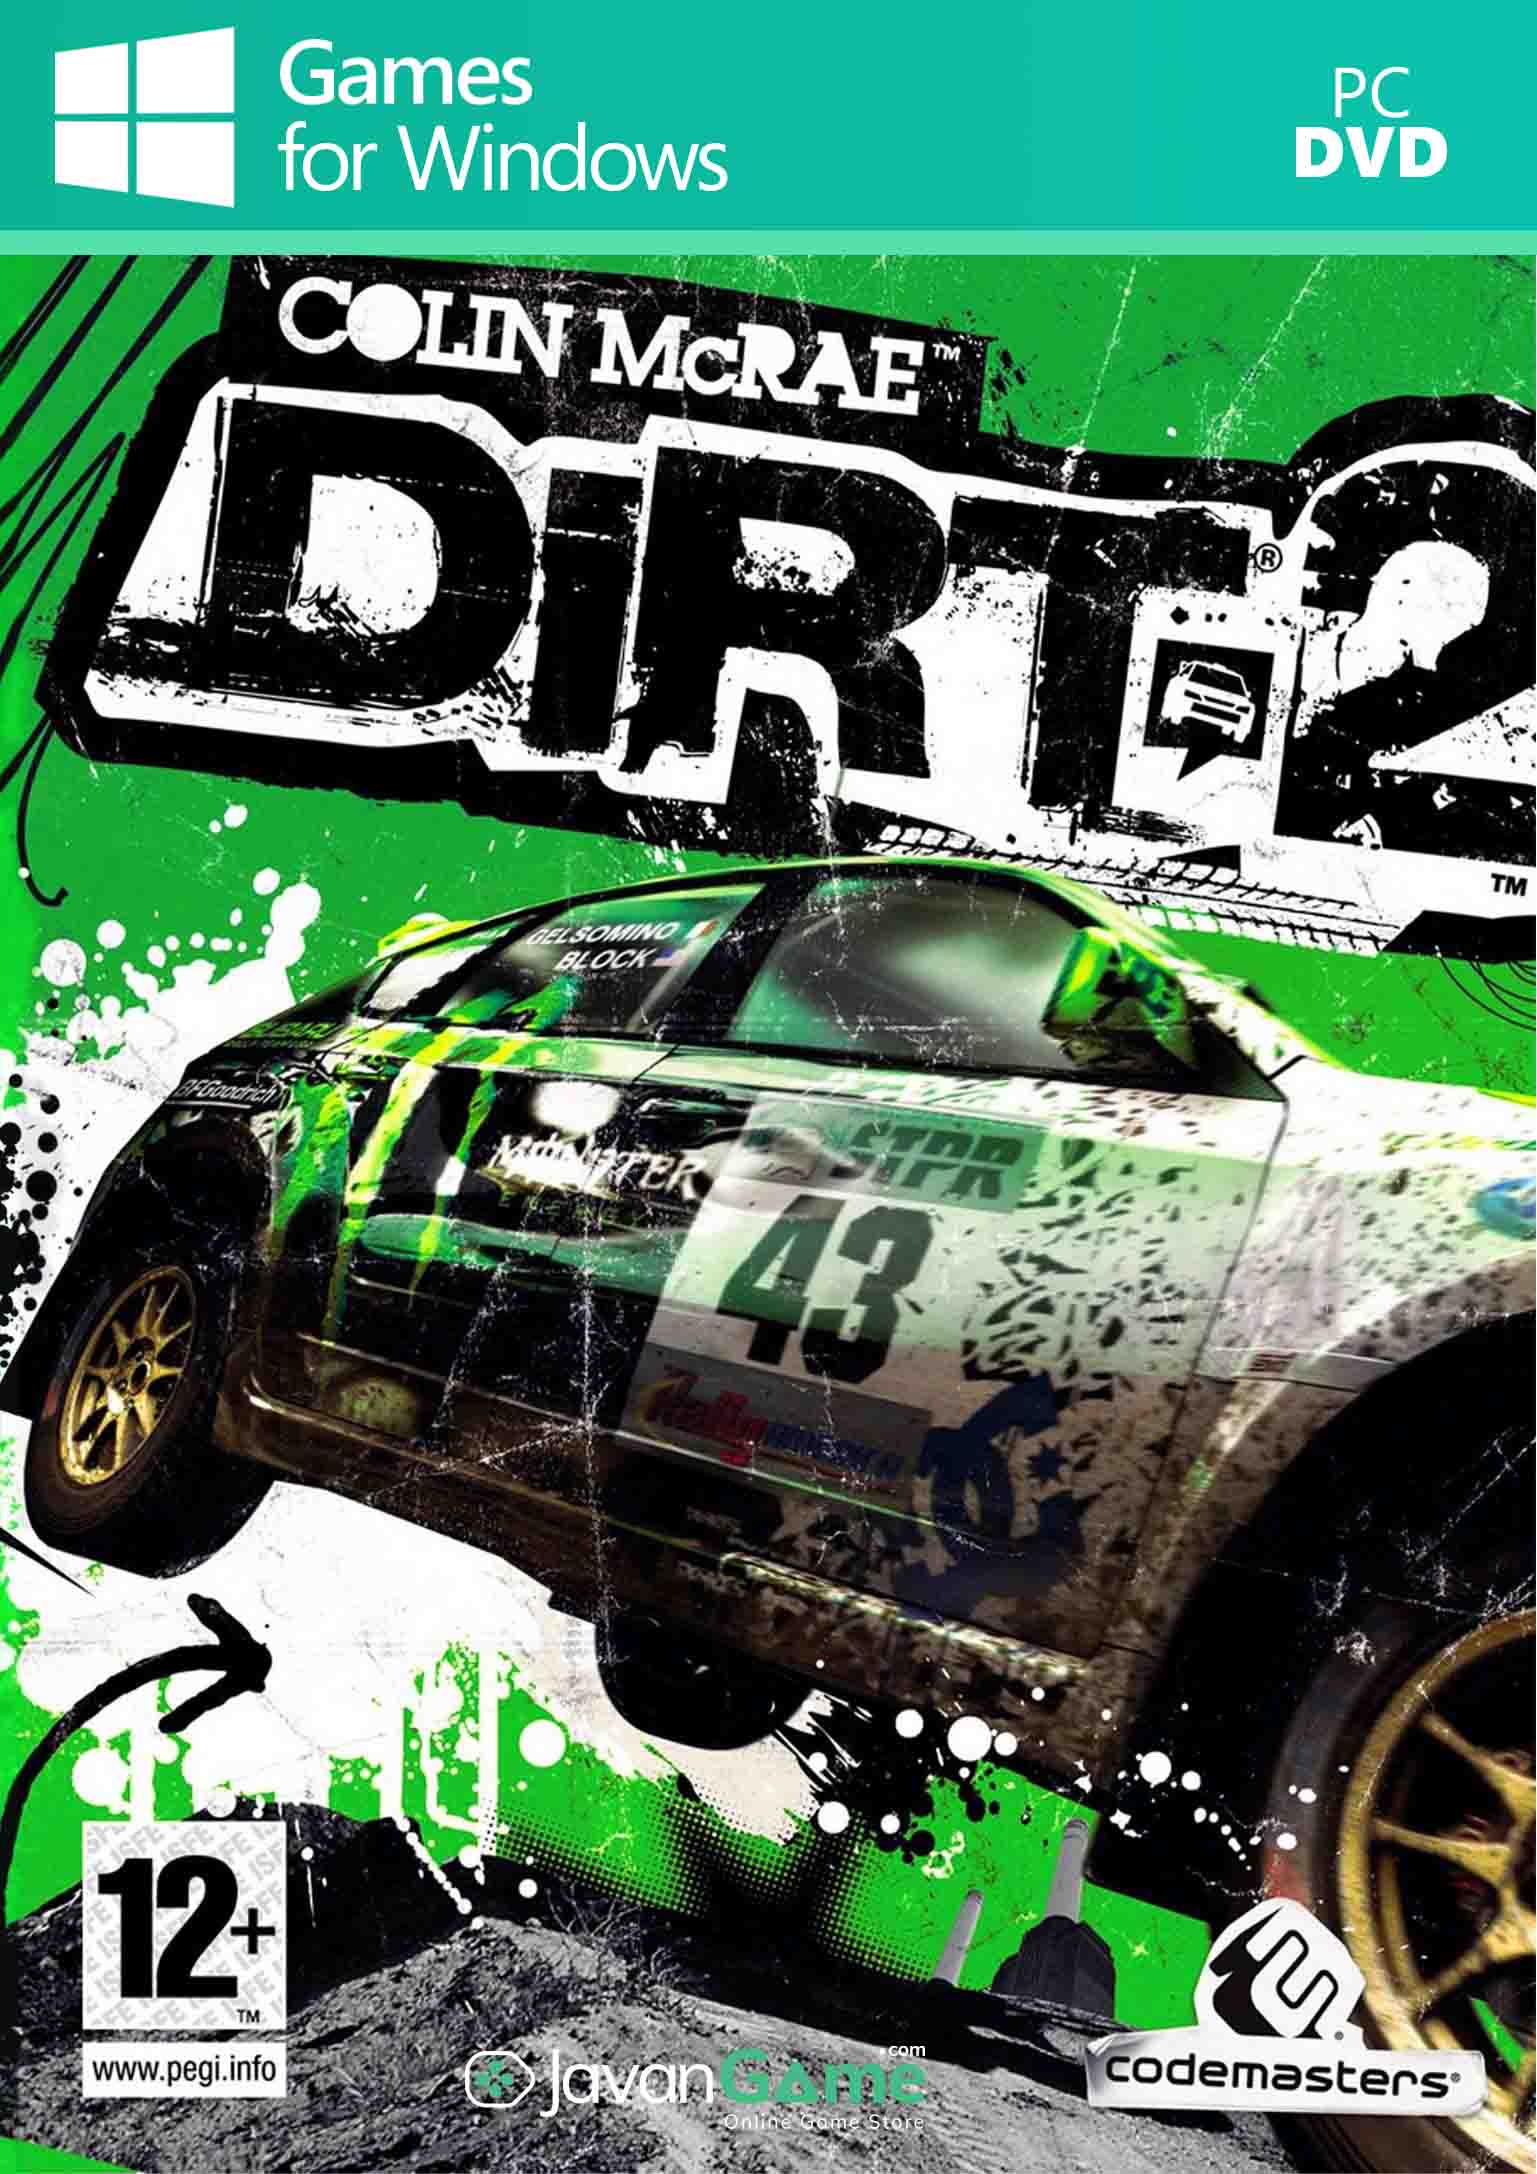 بازی Dirt 2 برای PC